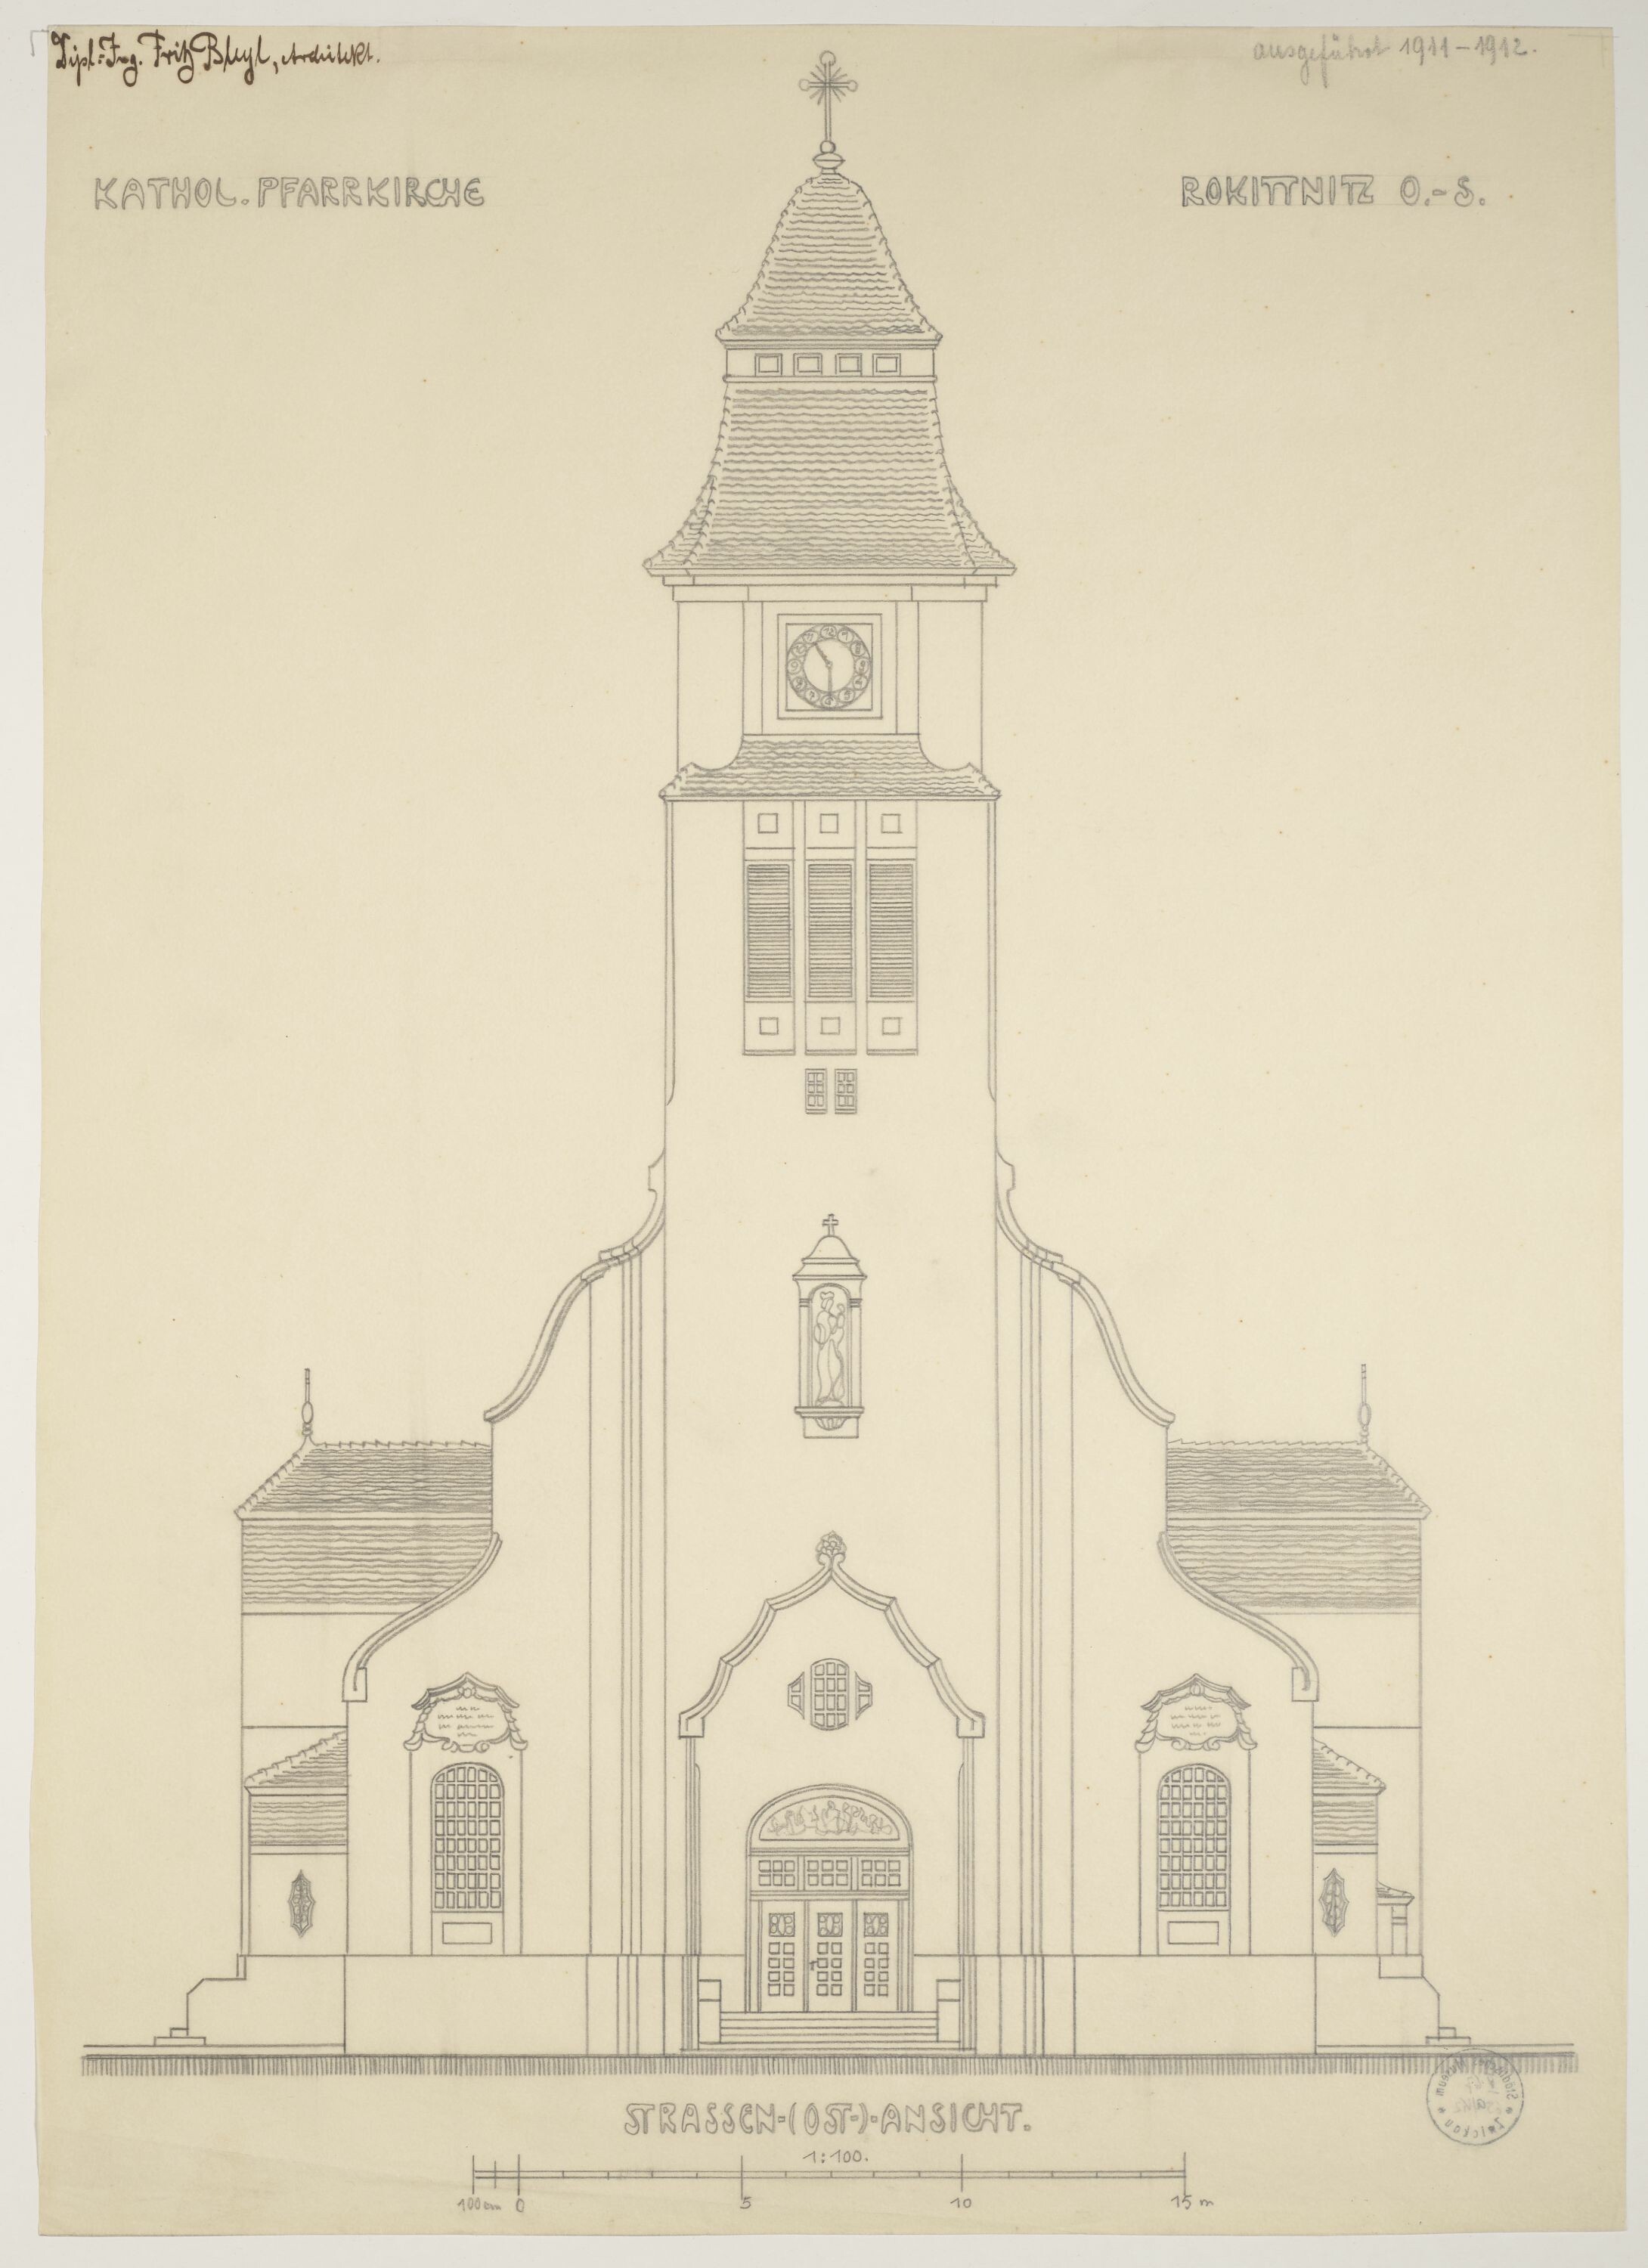 Katholische Pfarrkirche in Rokittnitz, Oberschlesien, Strassen- (Ost)-Ansicht, Entwurf ausgeführt 1911-1912 (© Bleyl, Berlin/Solingen RR-F)